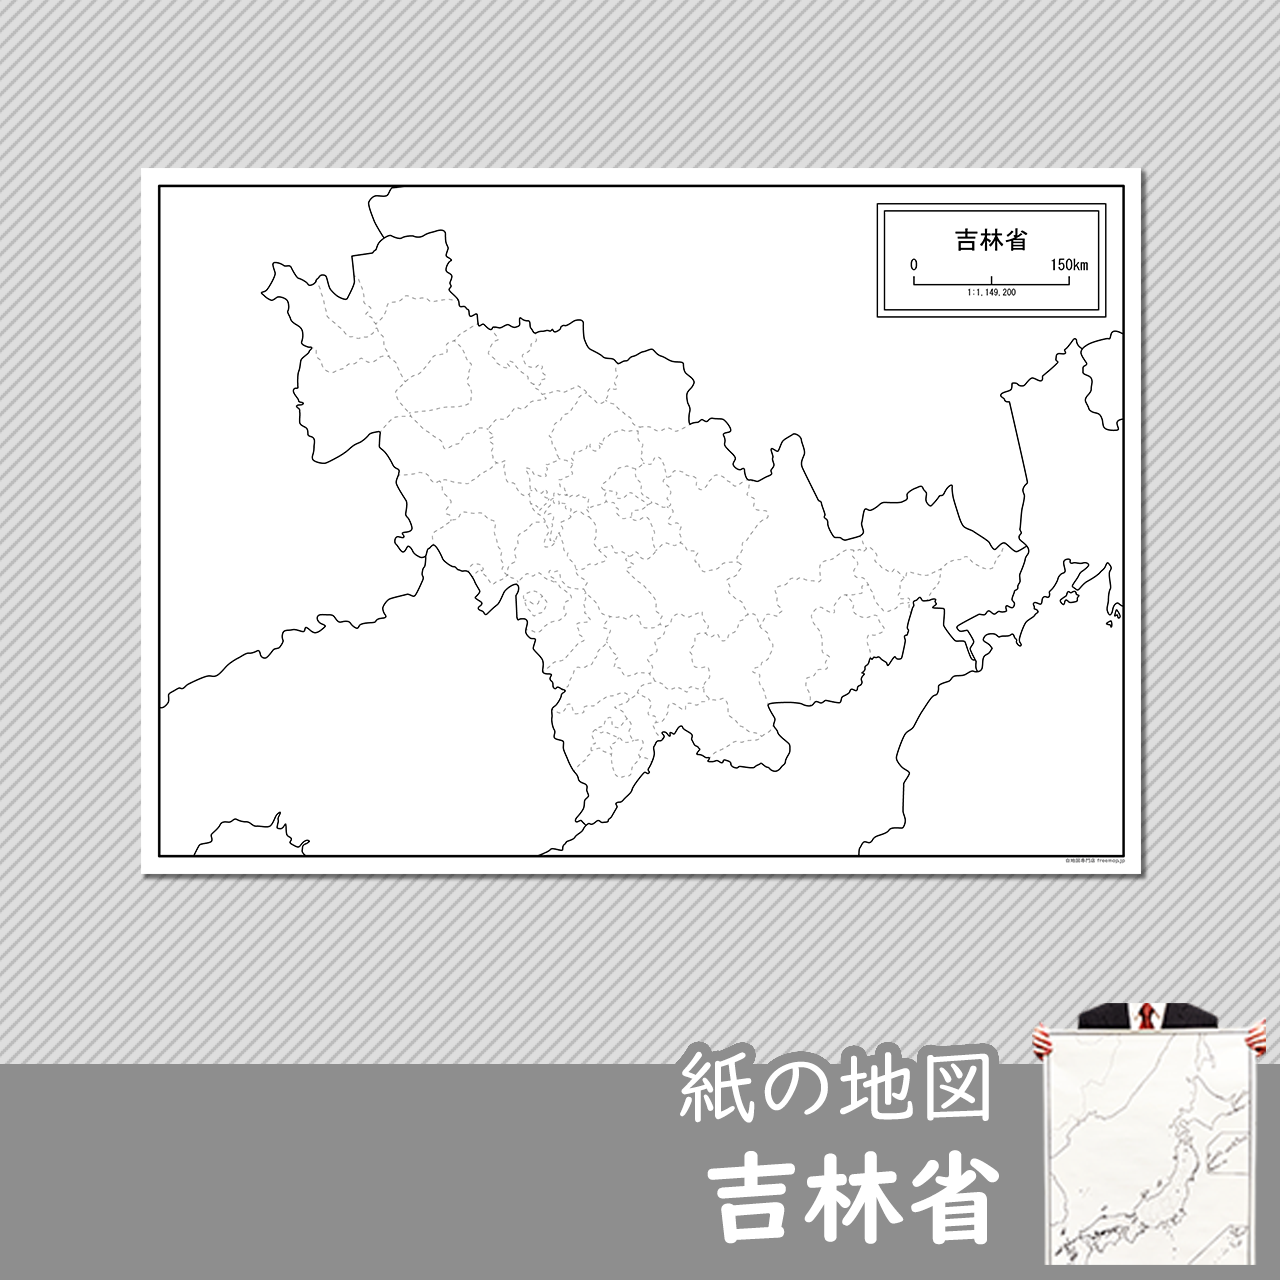 吉林省（きつりんしょう）の紙の白地図のサムネイル